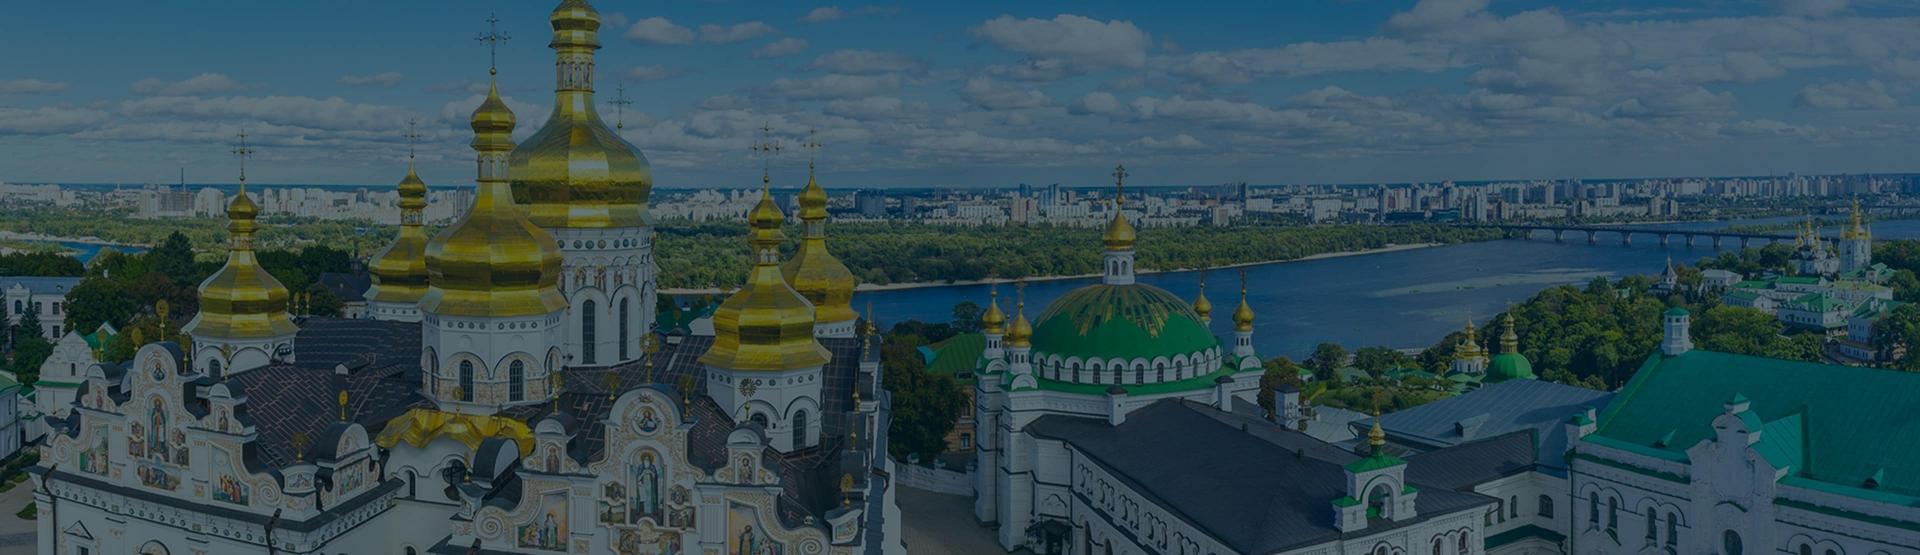 ابحث عن الفنادق في كييف